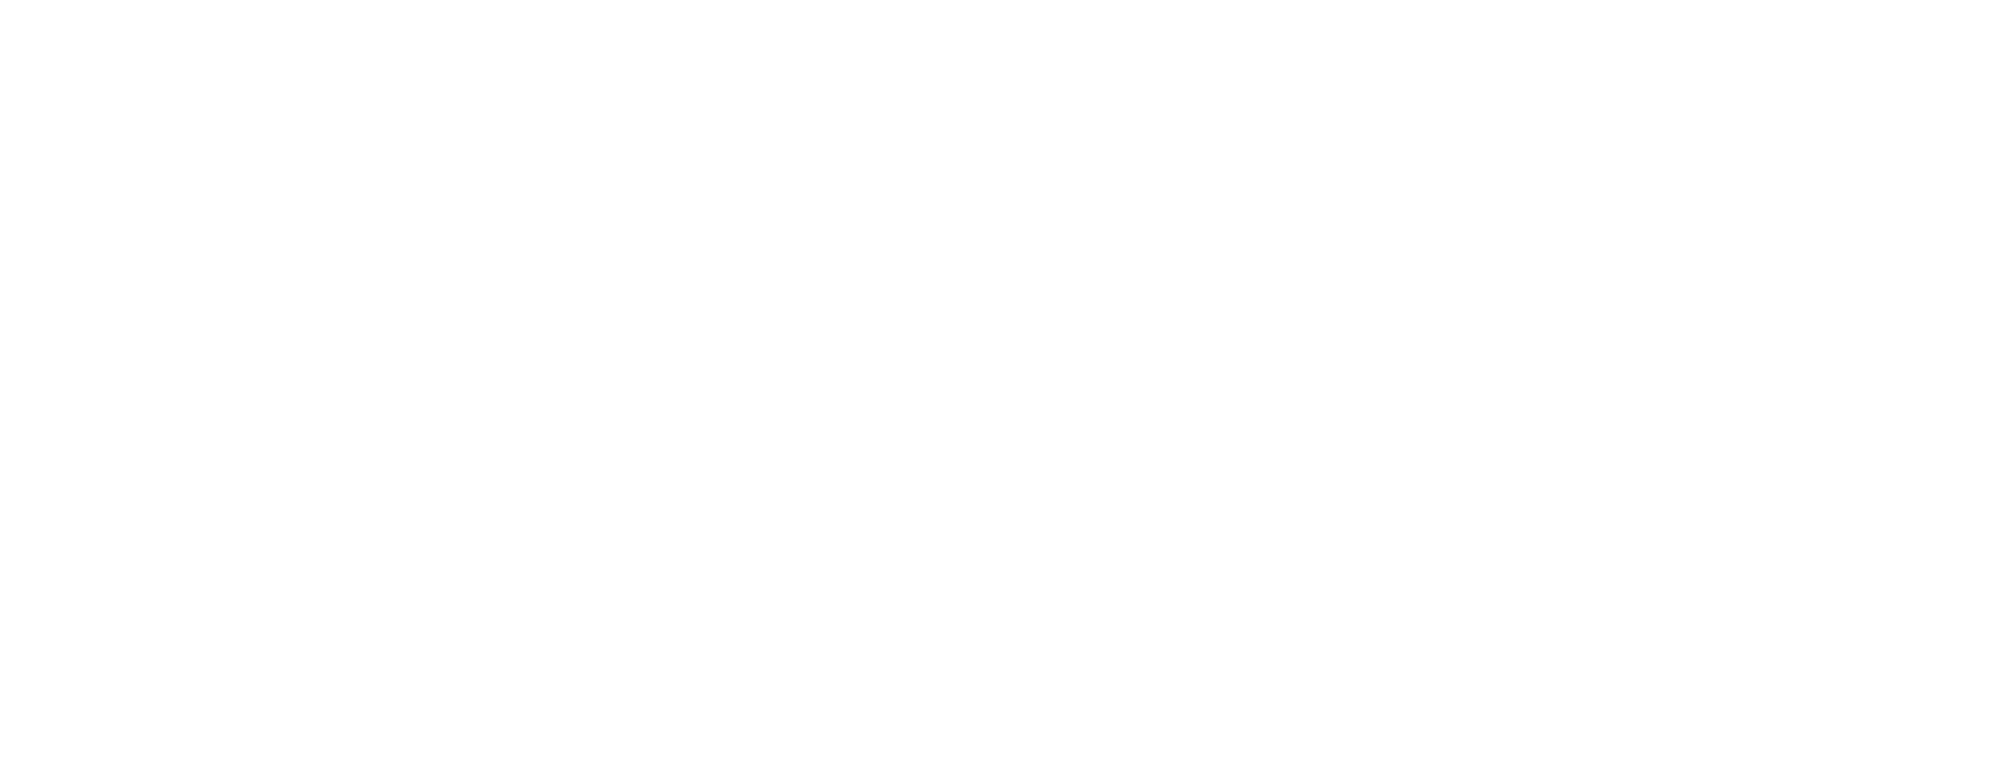 Bandai Namco’s Purpose Fun for All into the Future